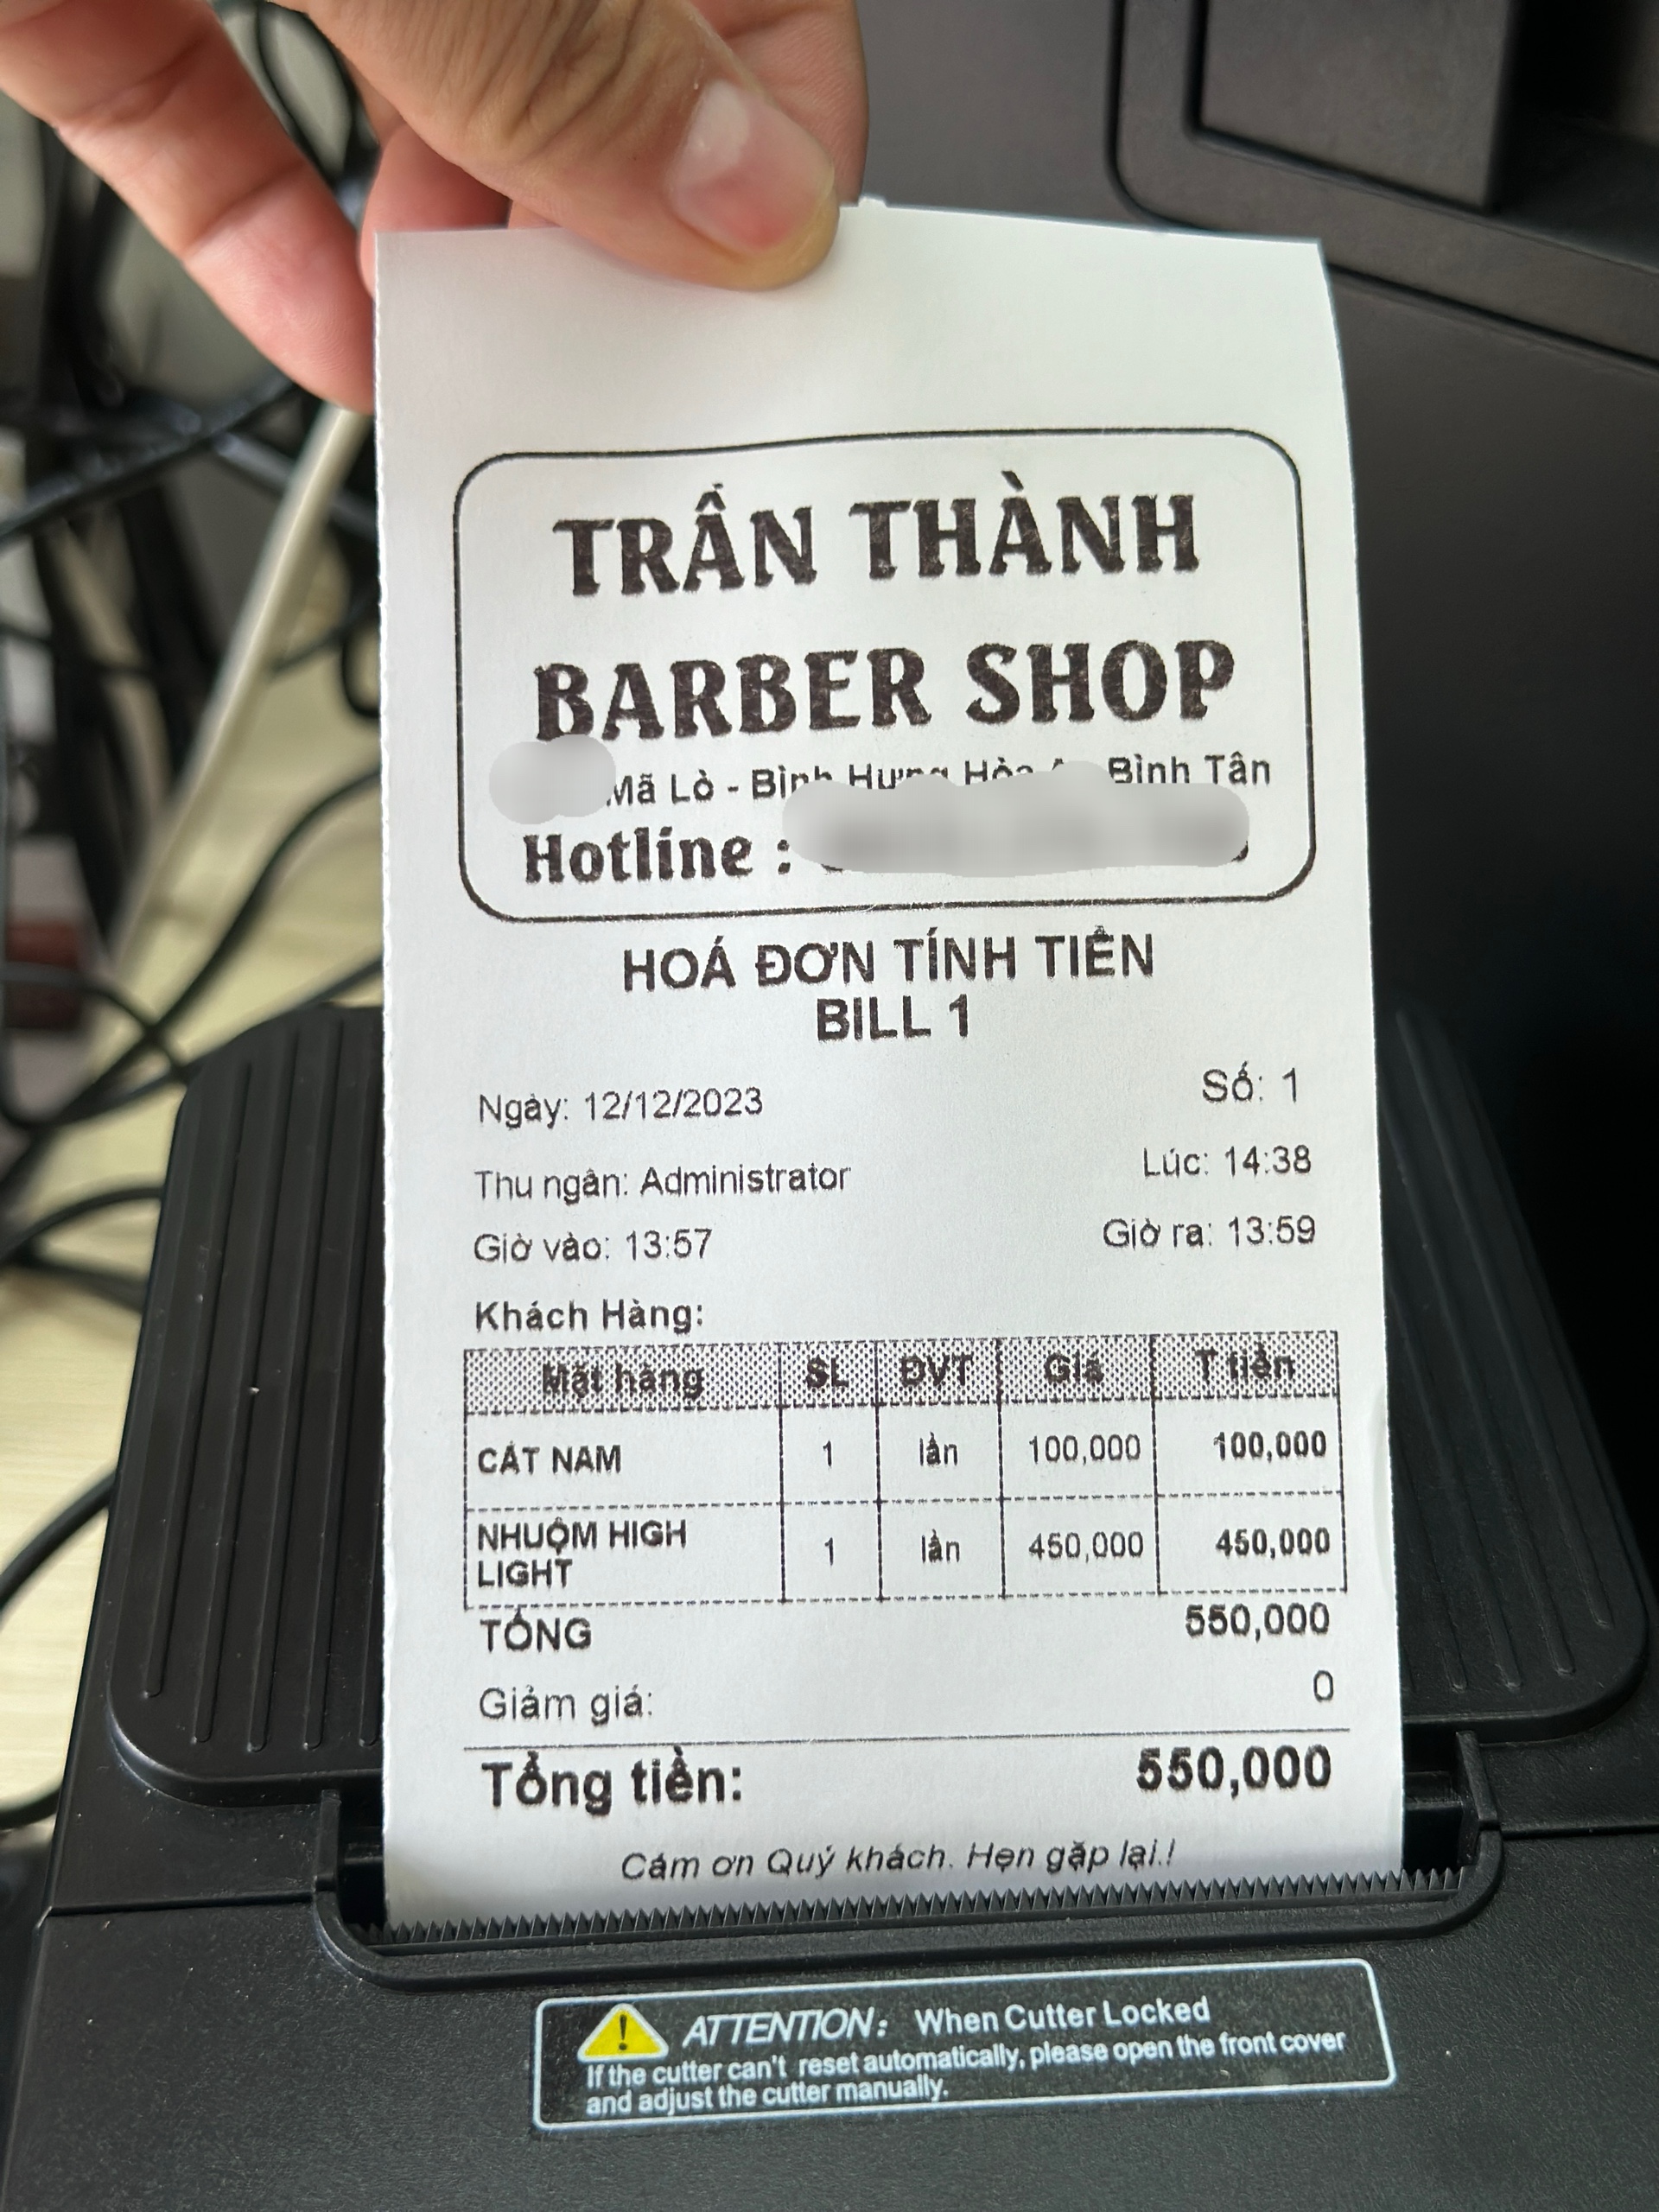 Trọn bộ máy tính tiền cho salon tóc. Lắp đặt tận nơi : 0917.66.4444